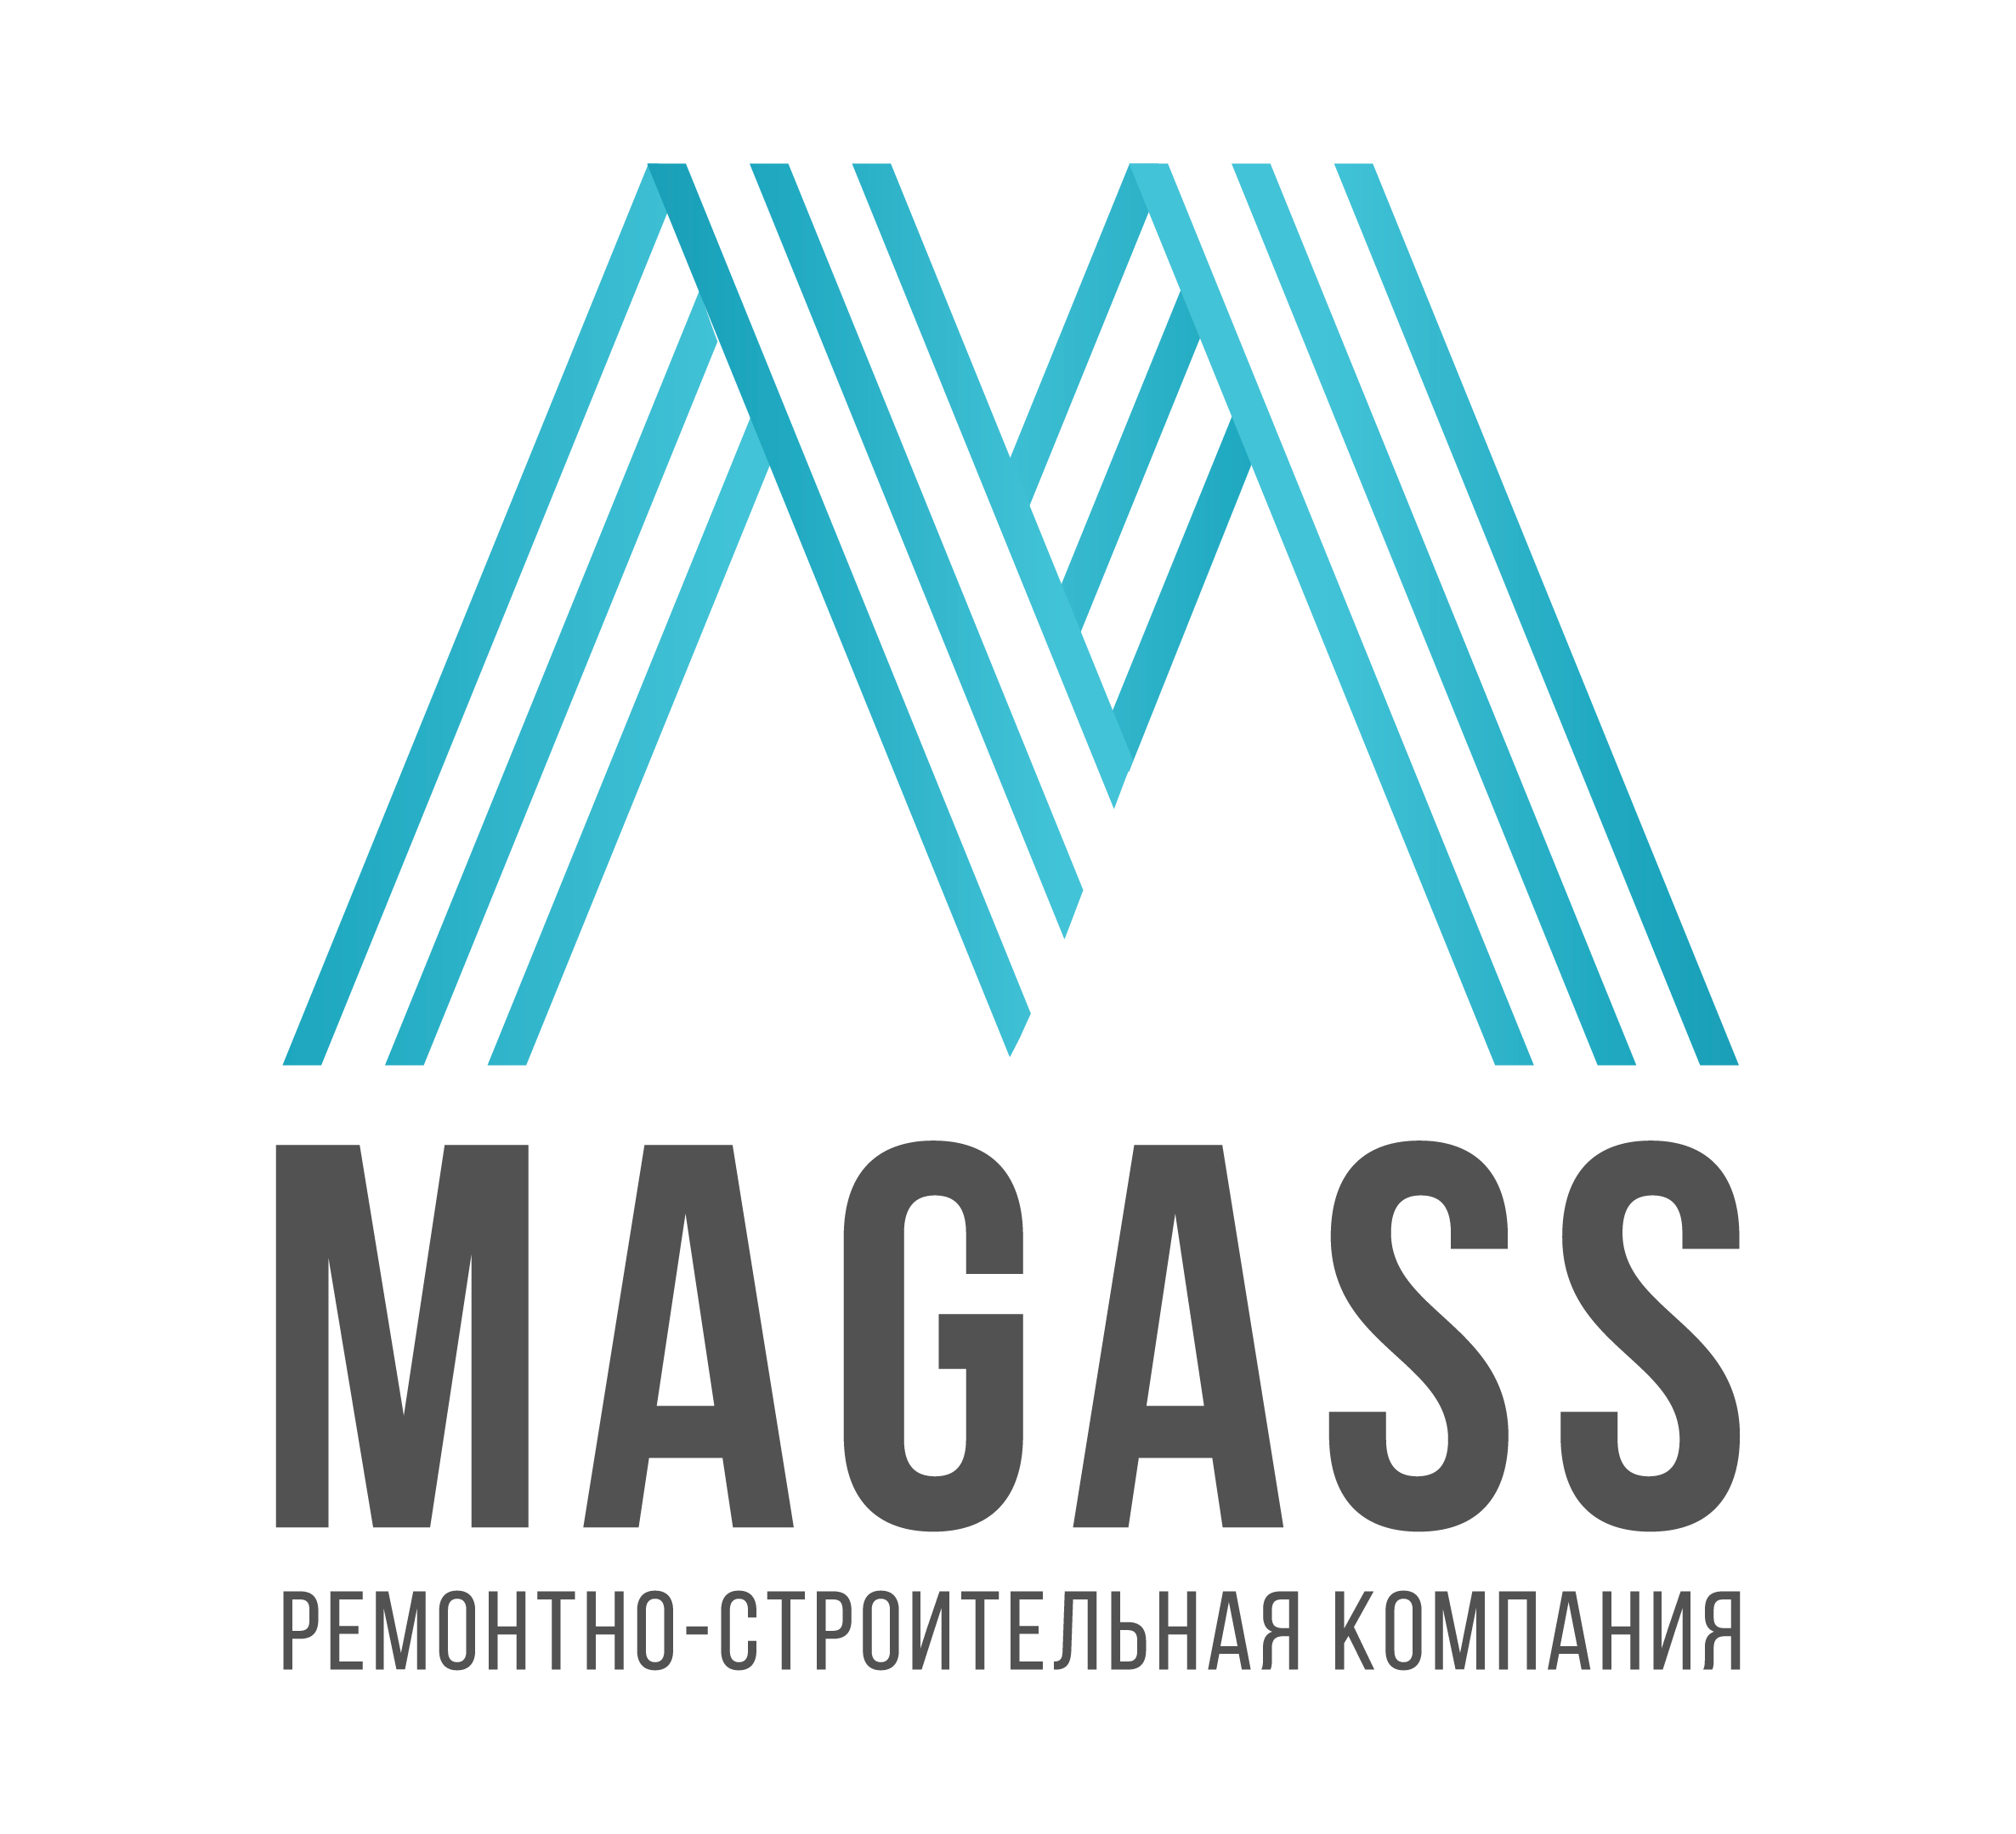 MAGASS